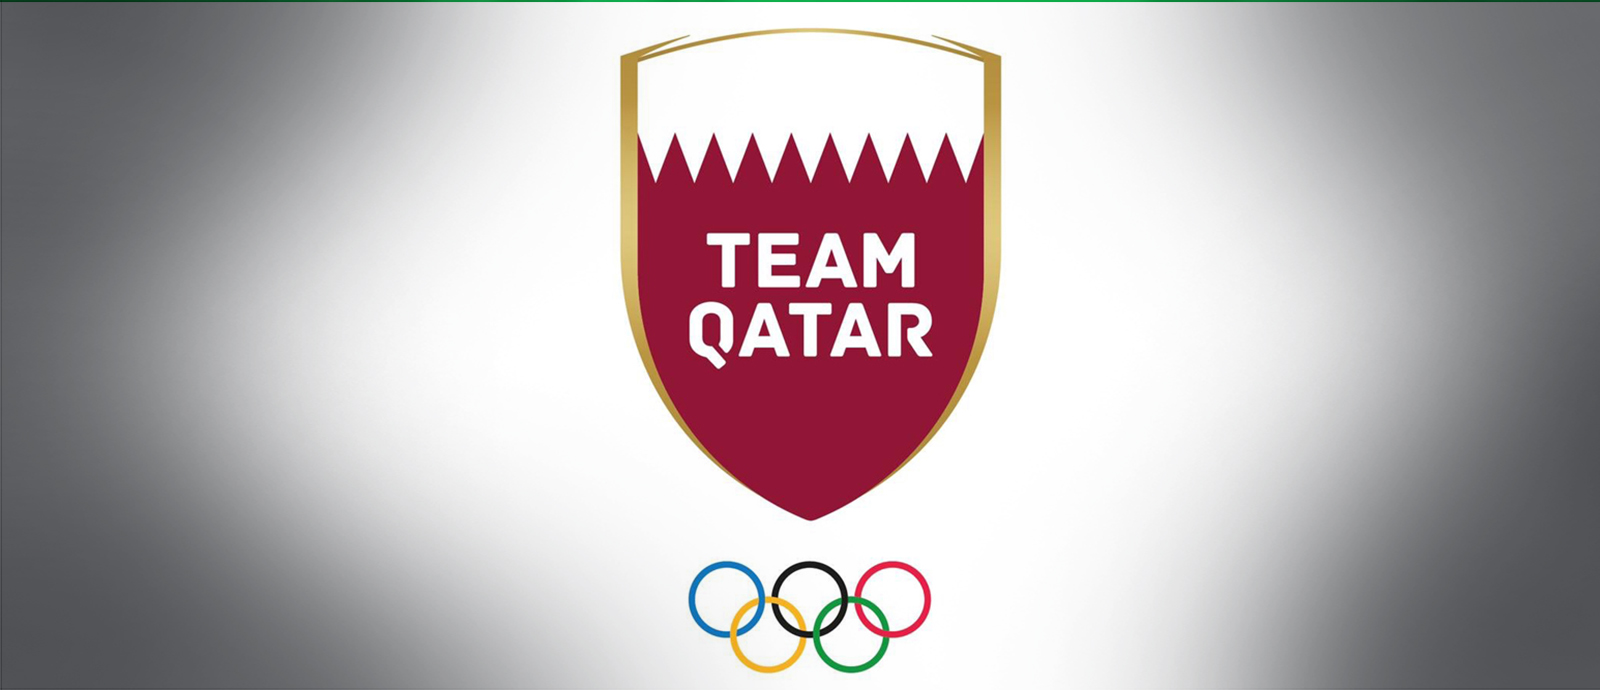 شعار اللجنة الأولمبية القطرية